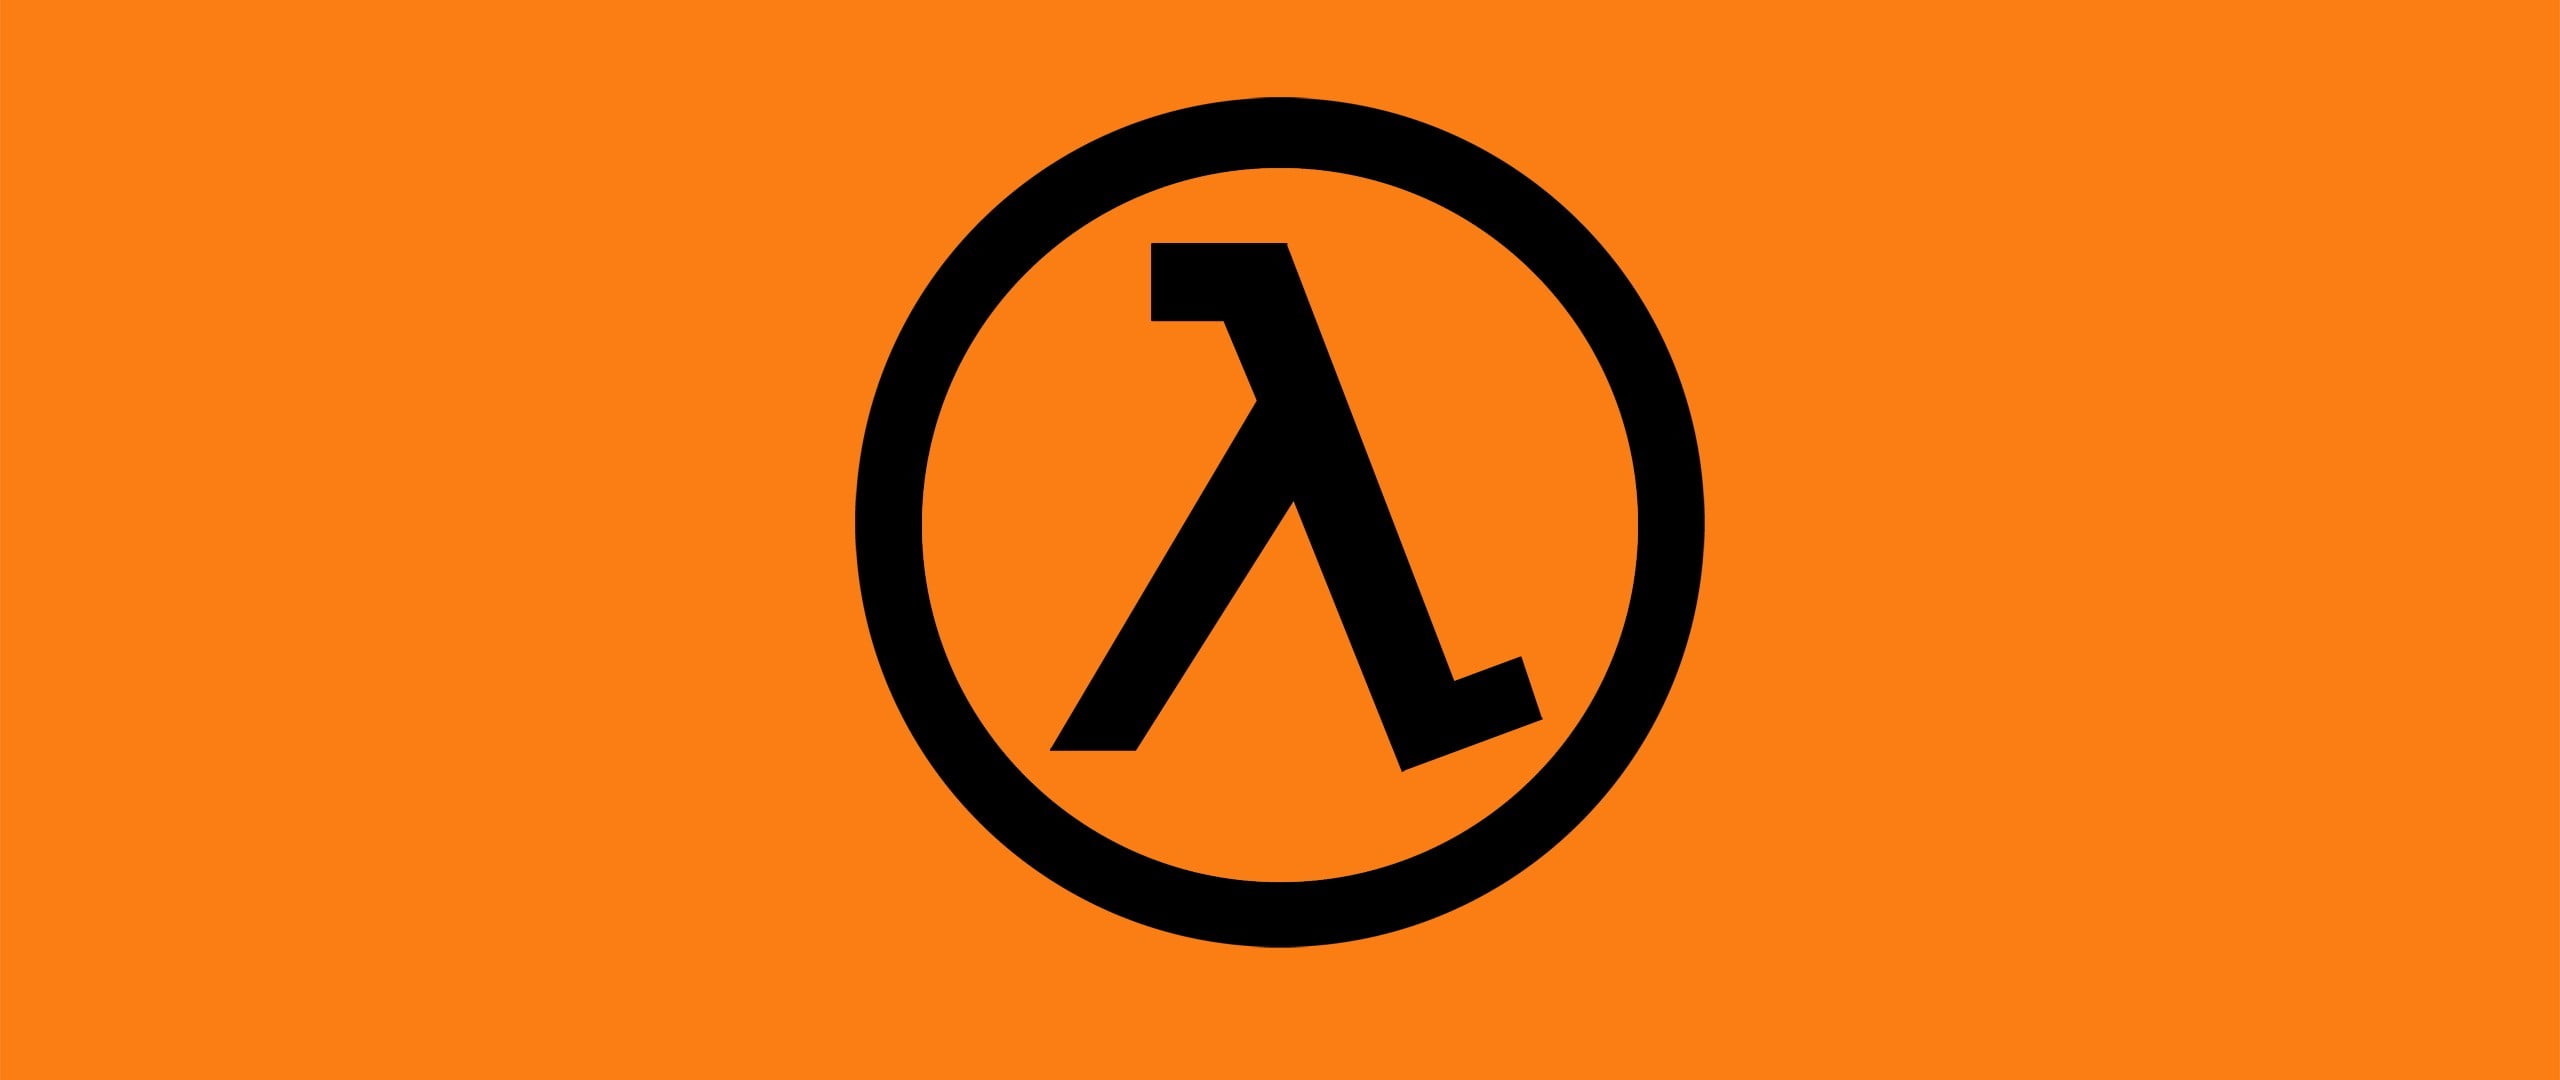 Half Life logo, Half-Life, lambda